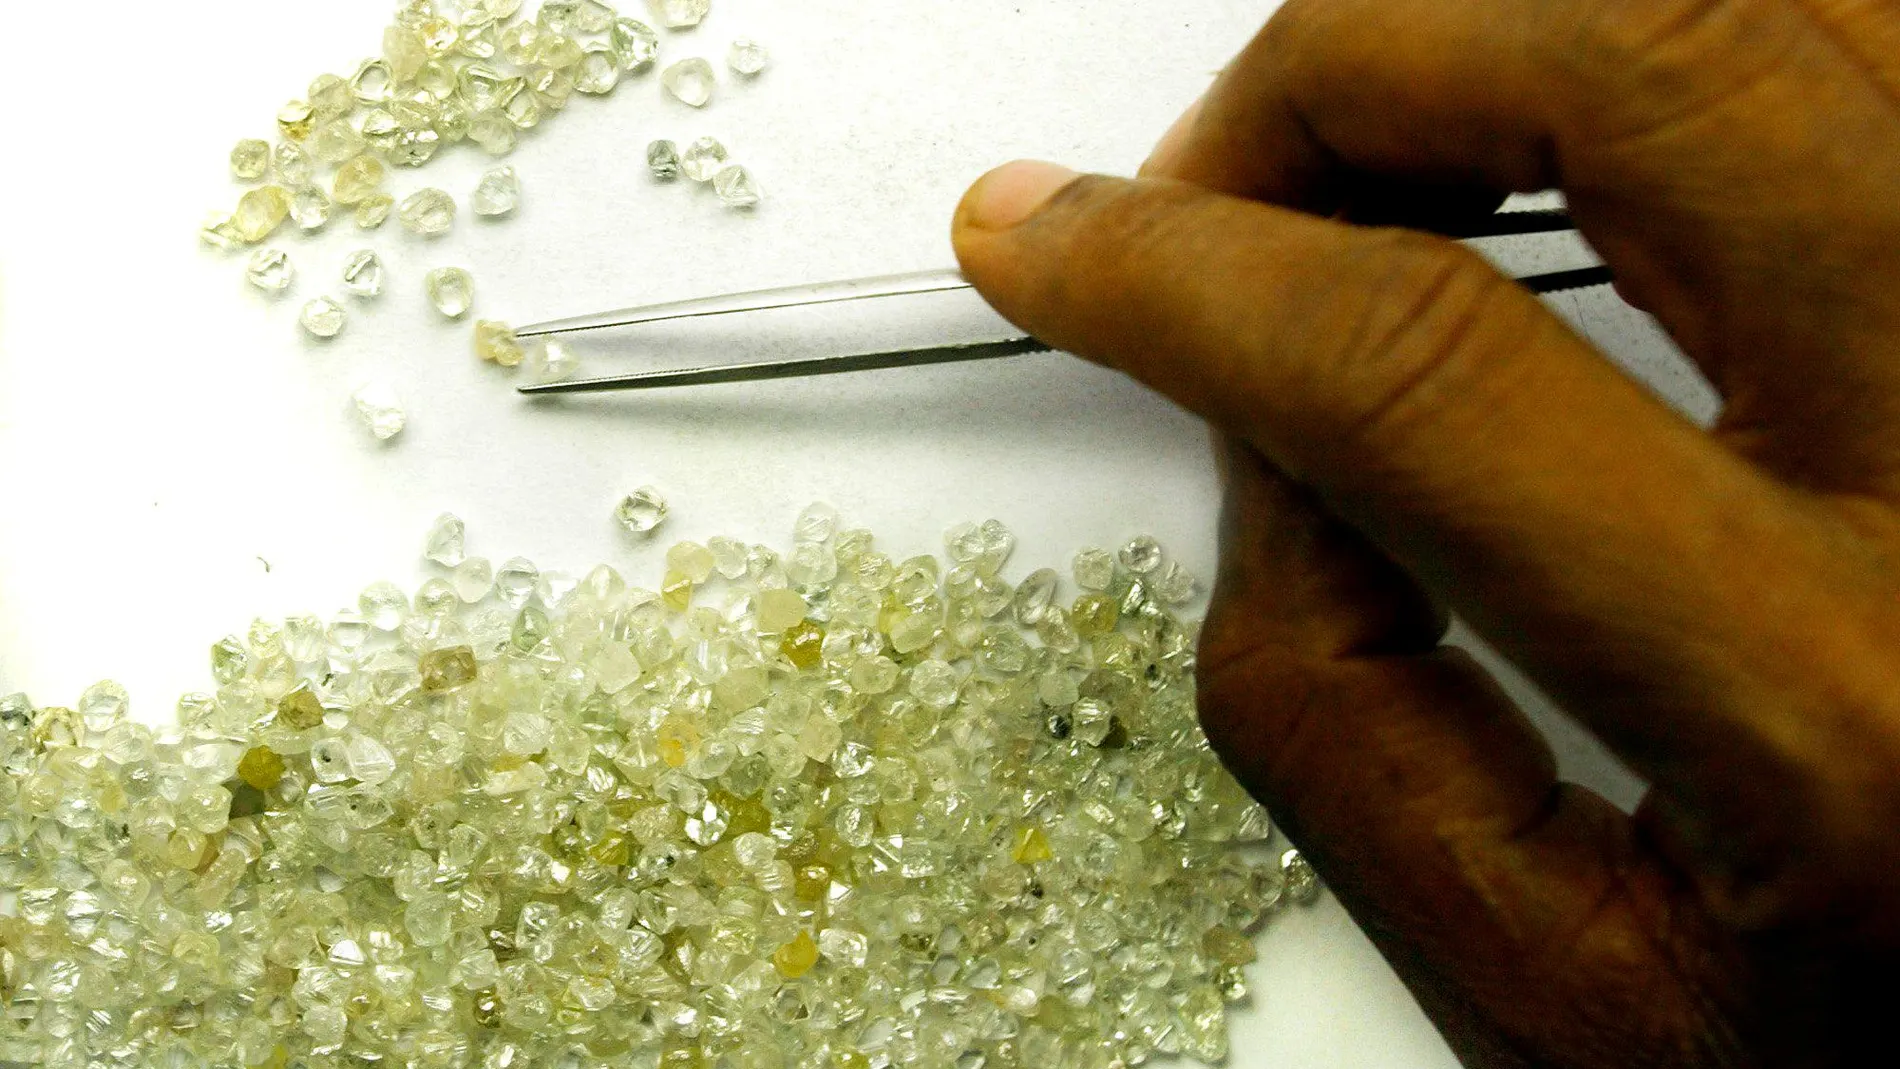 Transformar la basura en diamantes en sólo 0,5 segundos: la última revolución tecnológica